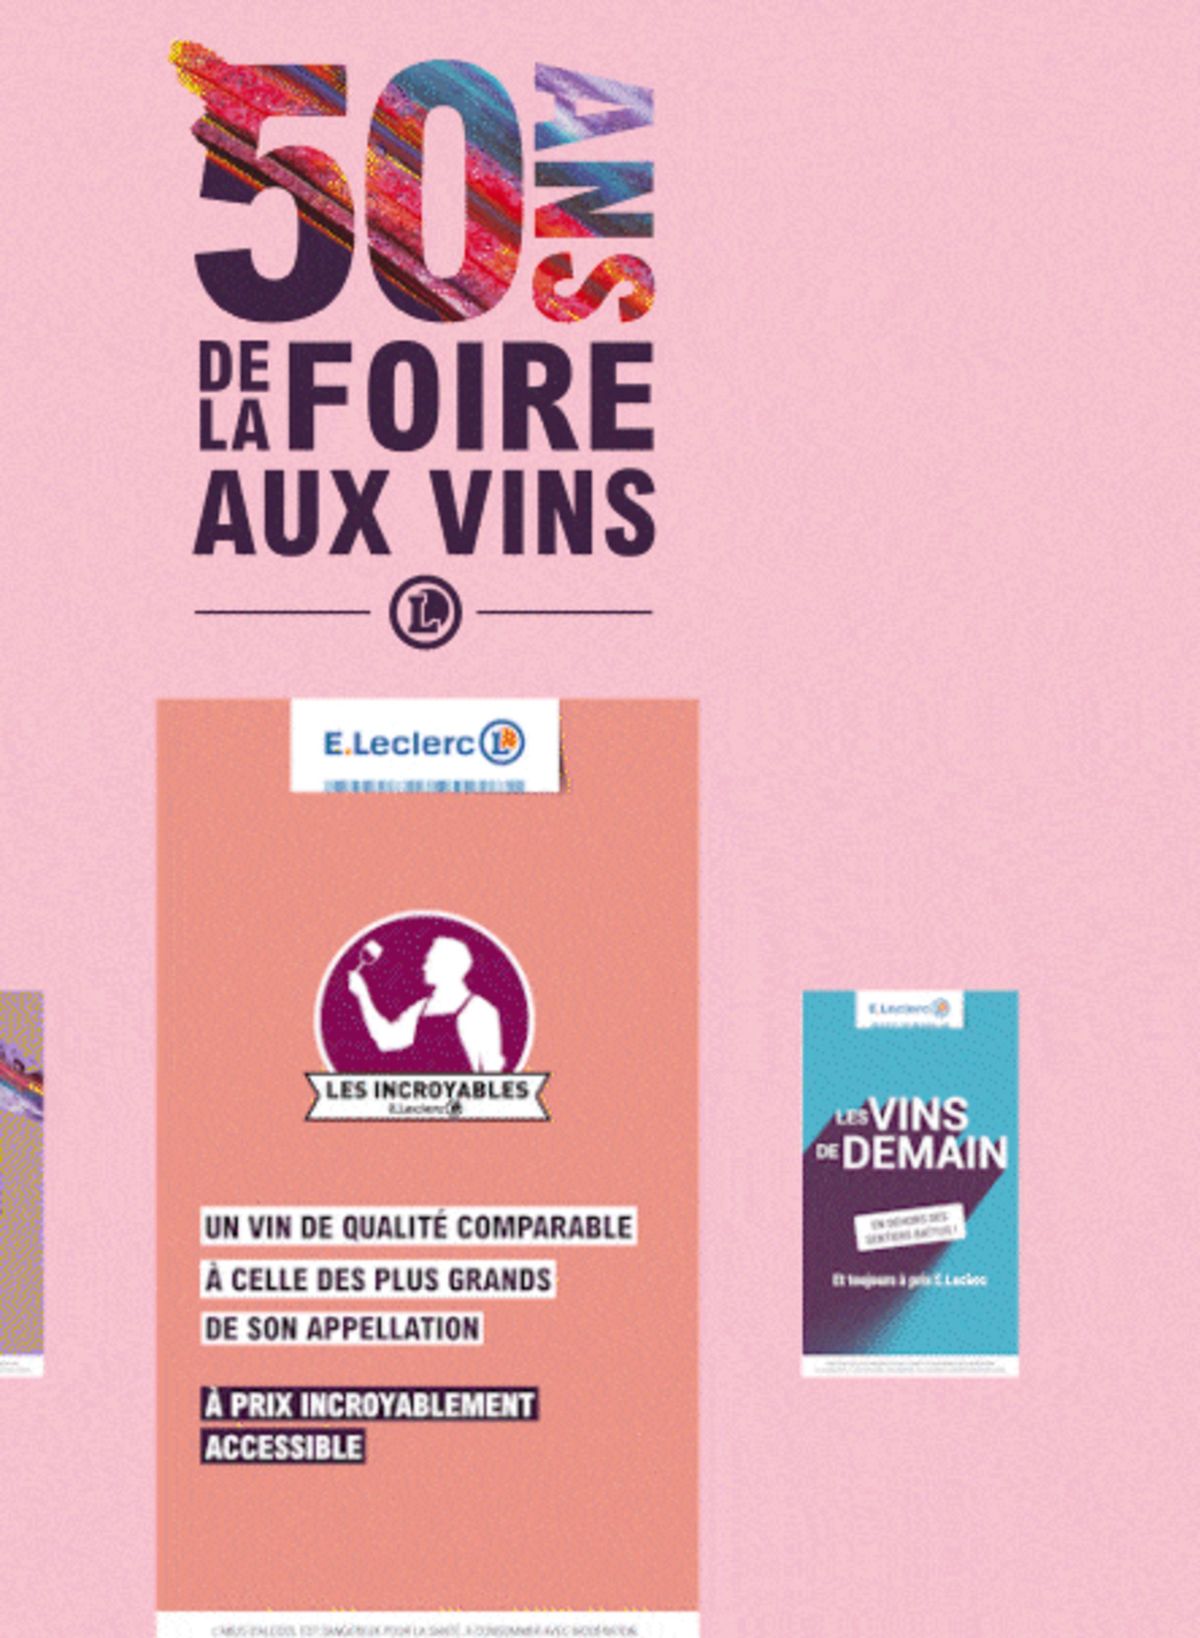 Catalogue Foire Aux Vins - Mixte, page 00687